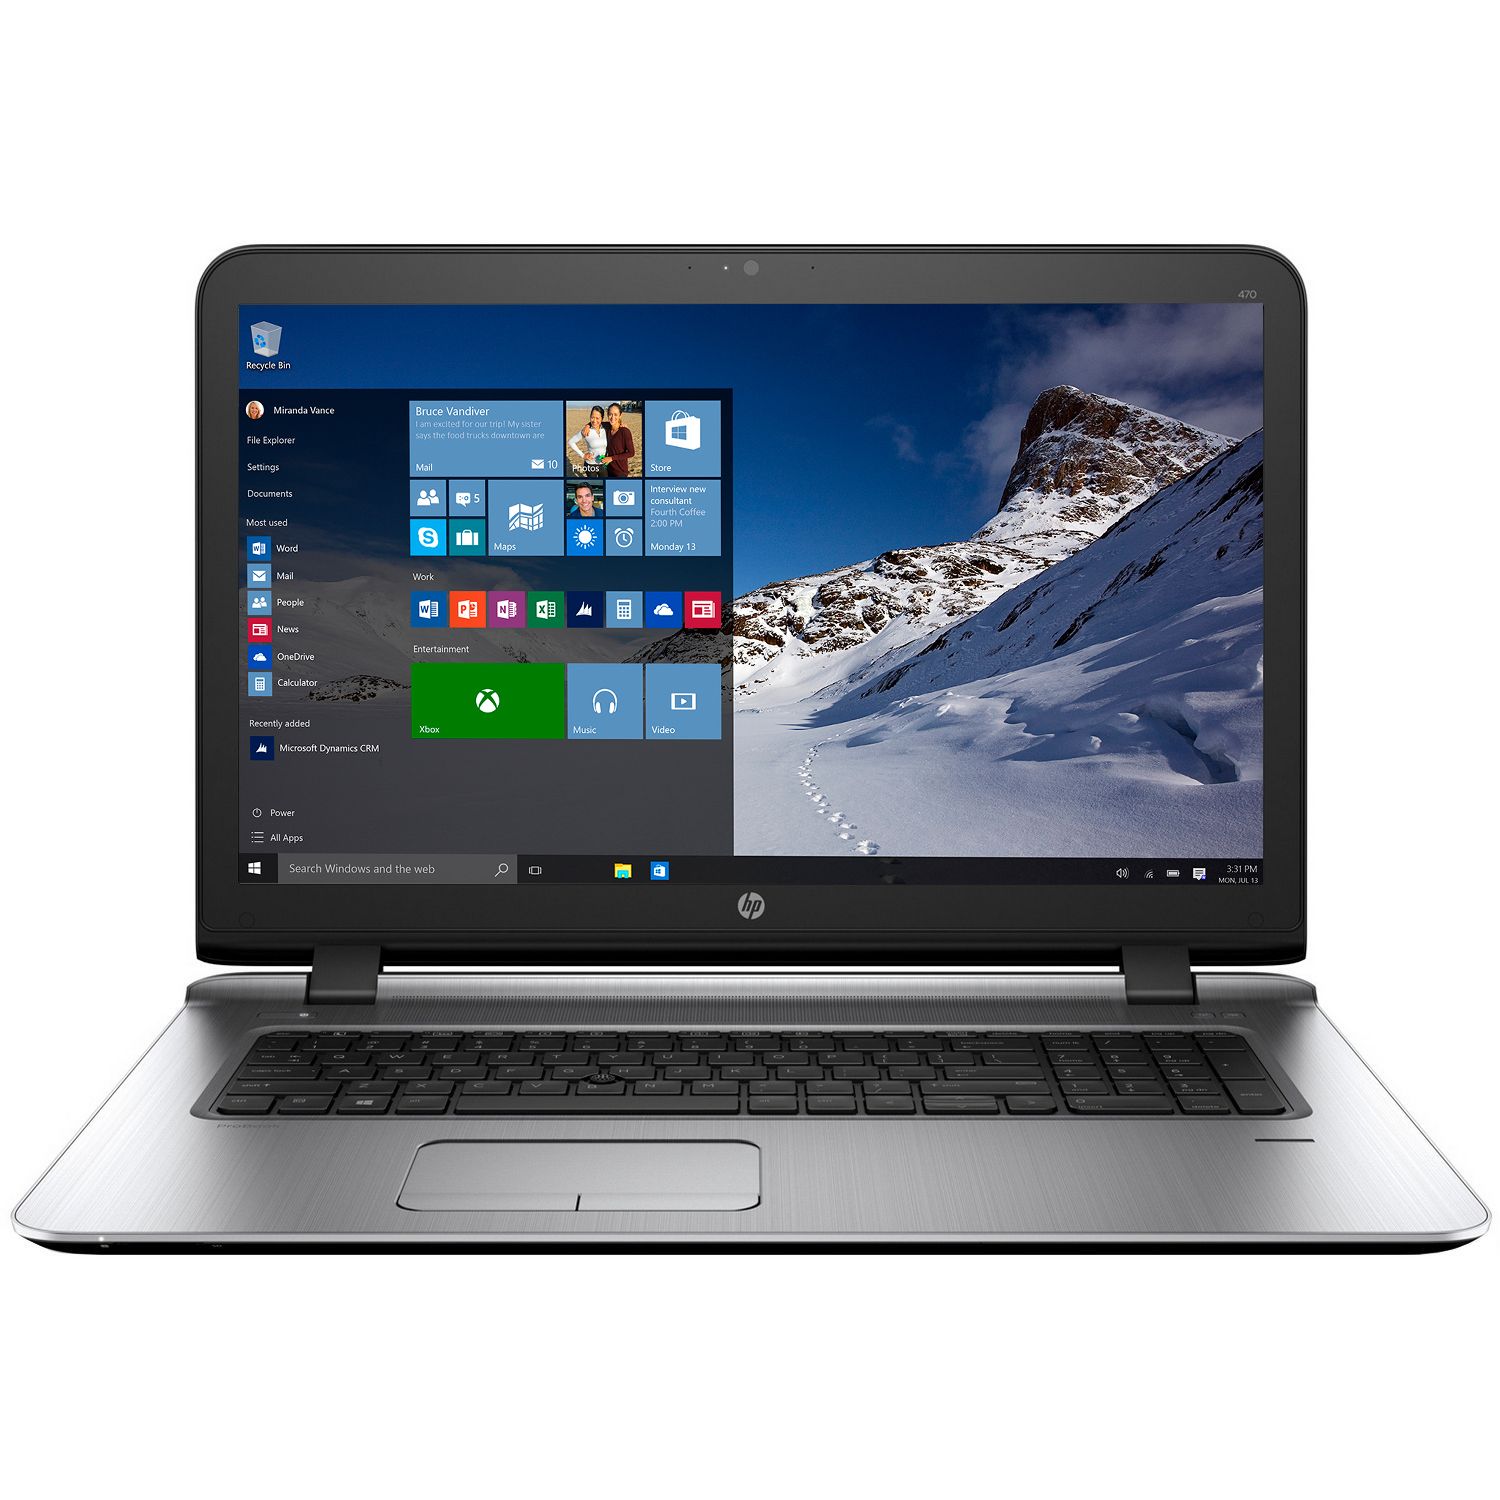 Laptop HP ProBook 470 G3, Intel Core i7-6500U, 8GB DDR4, SSD 256GB, AMD Radeon R7 M340 2GB, Windows 7 Pro + Windows 10 Pro